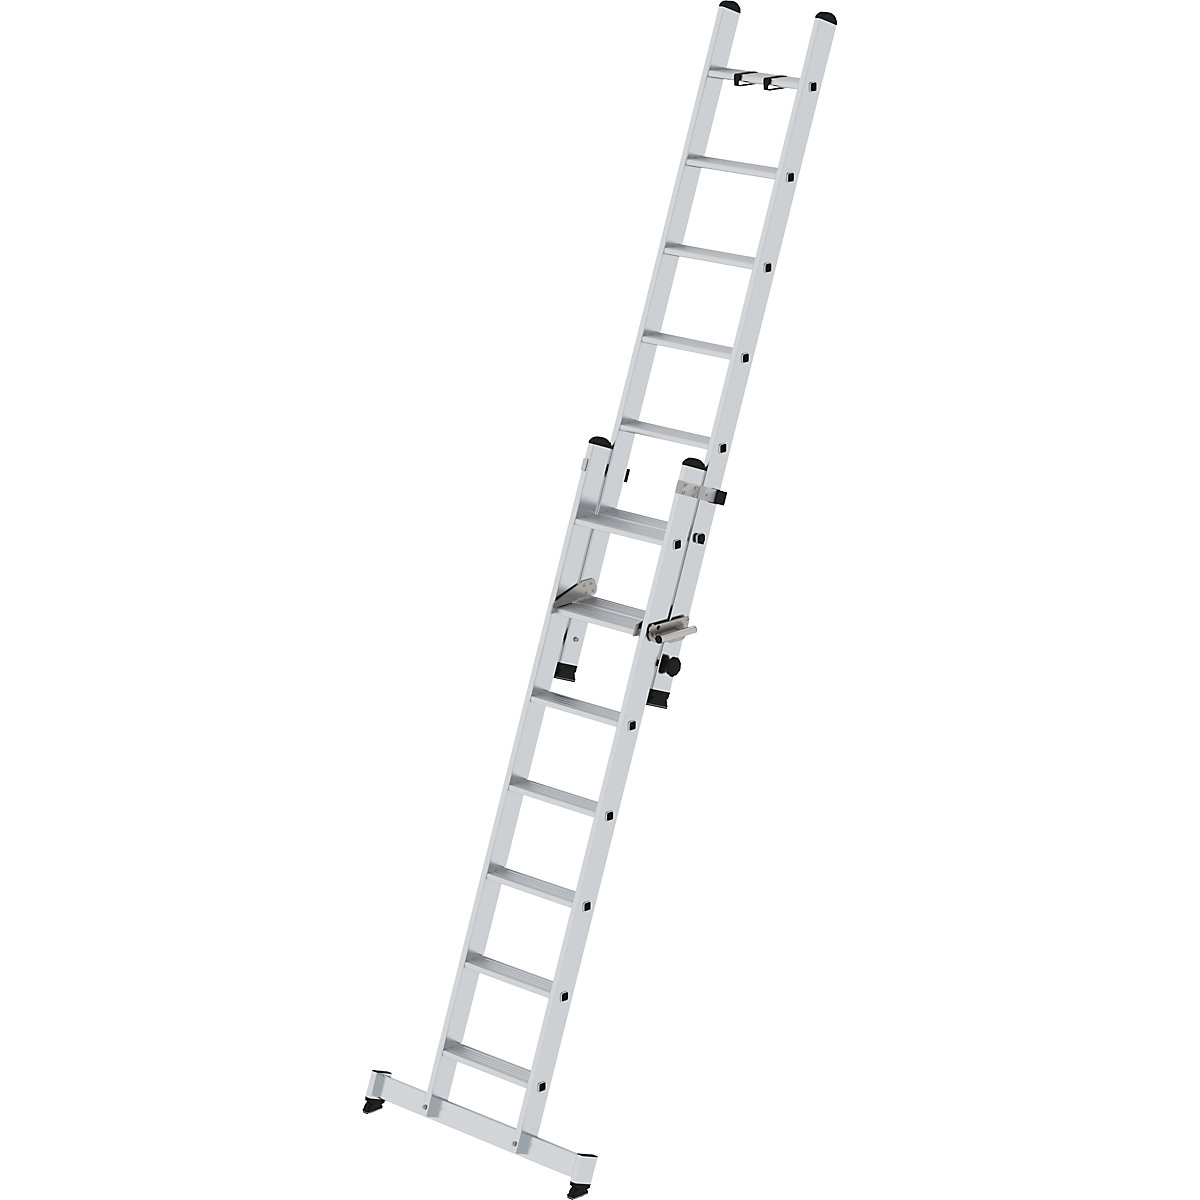 Extending step ladder, 2-part – MUNK